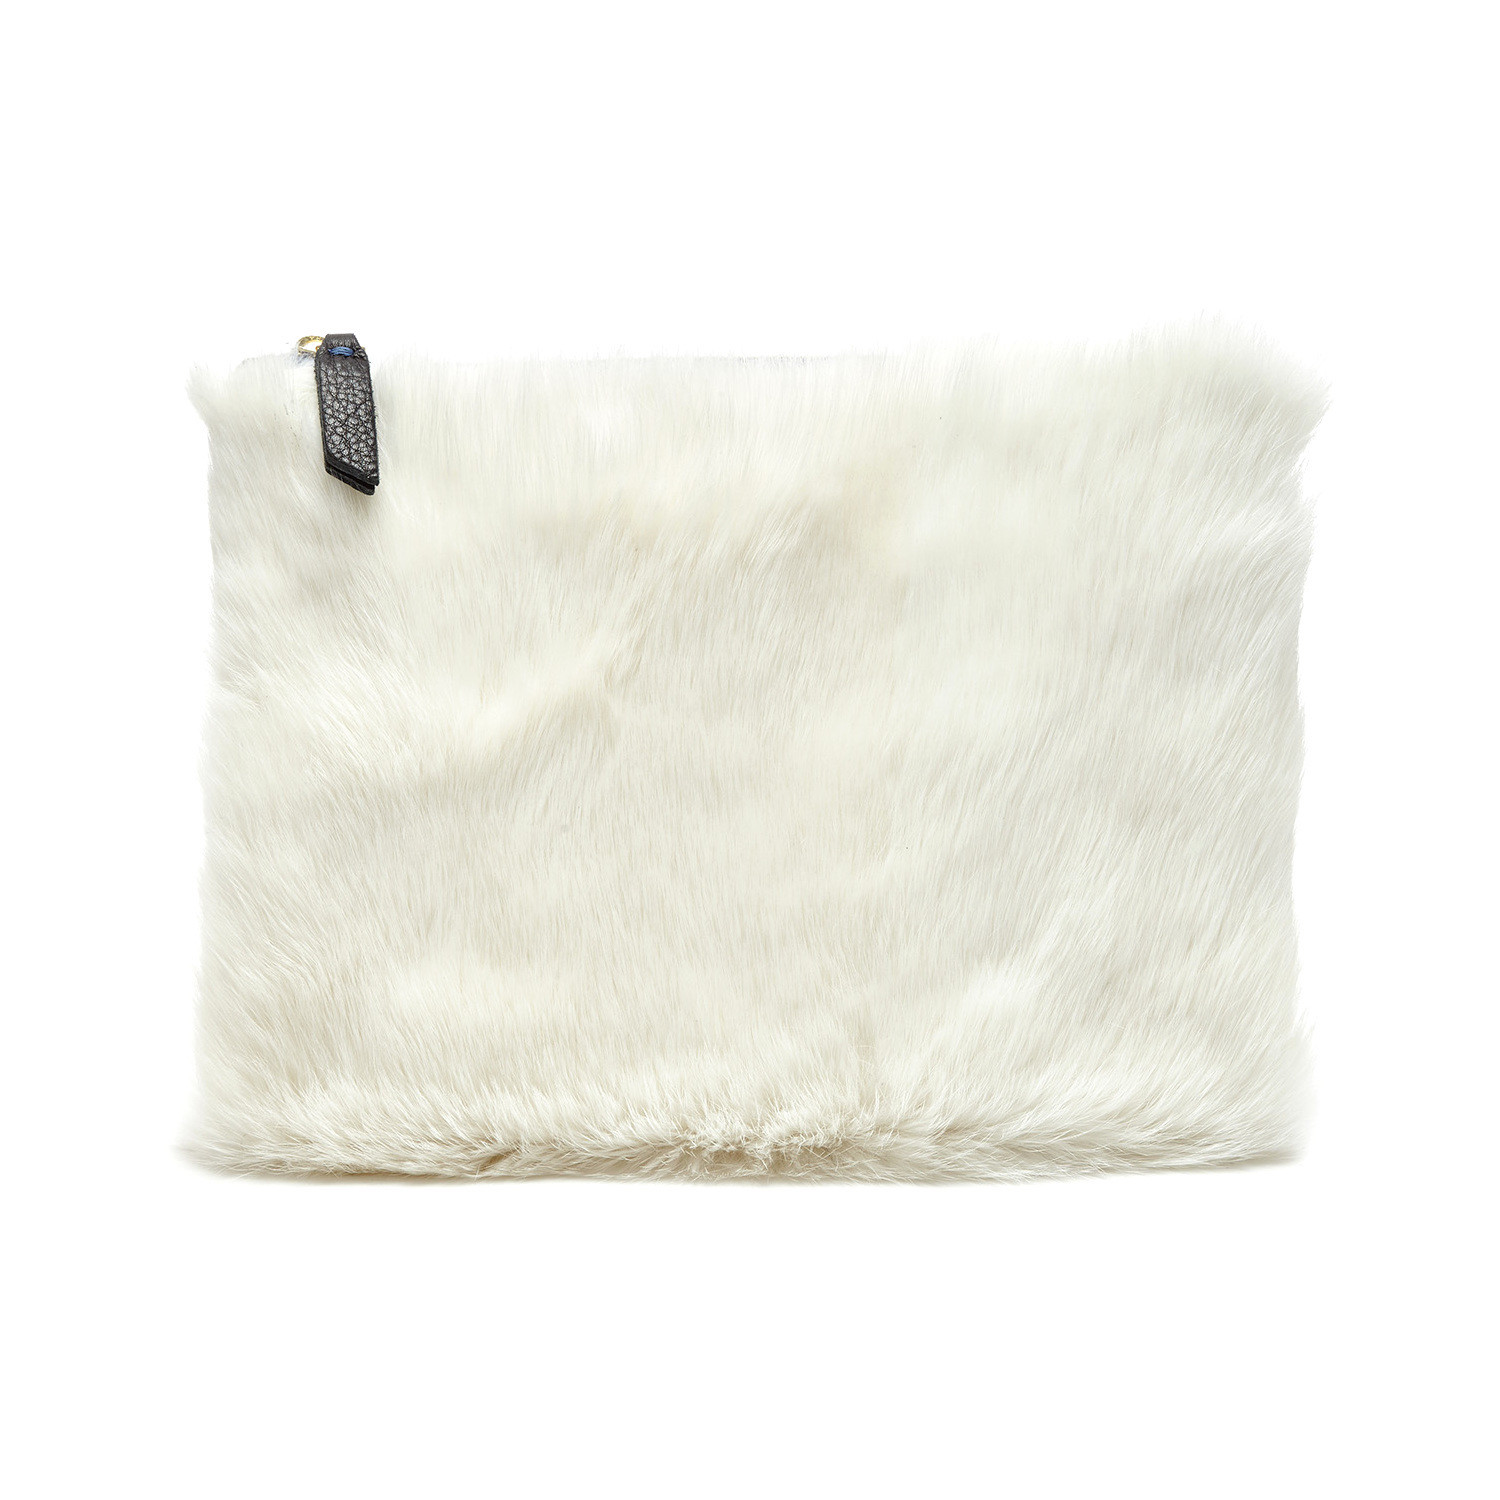 Campos Bags: Bunny Clutch (Genuine Rabbit Fur)